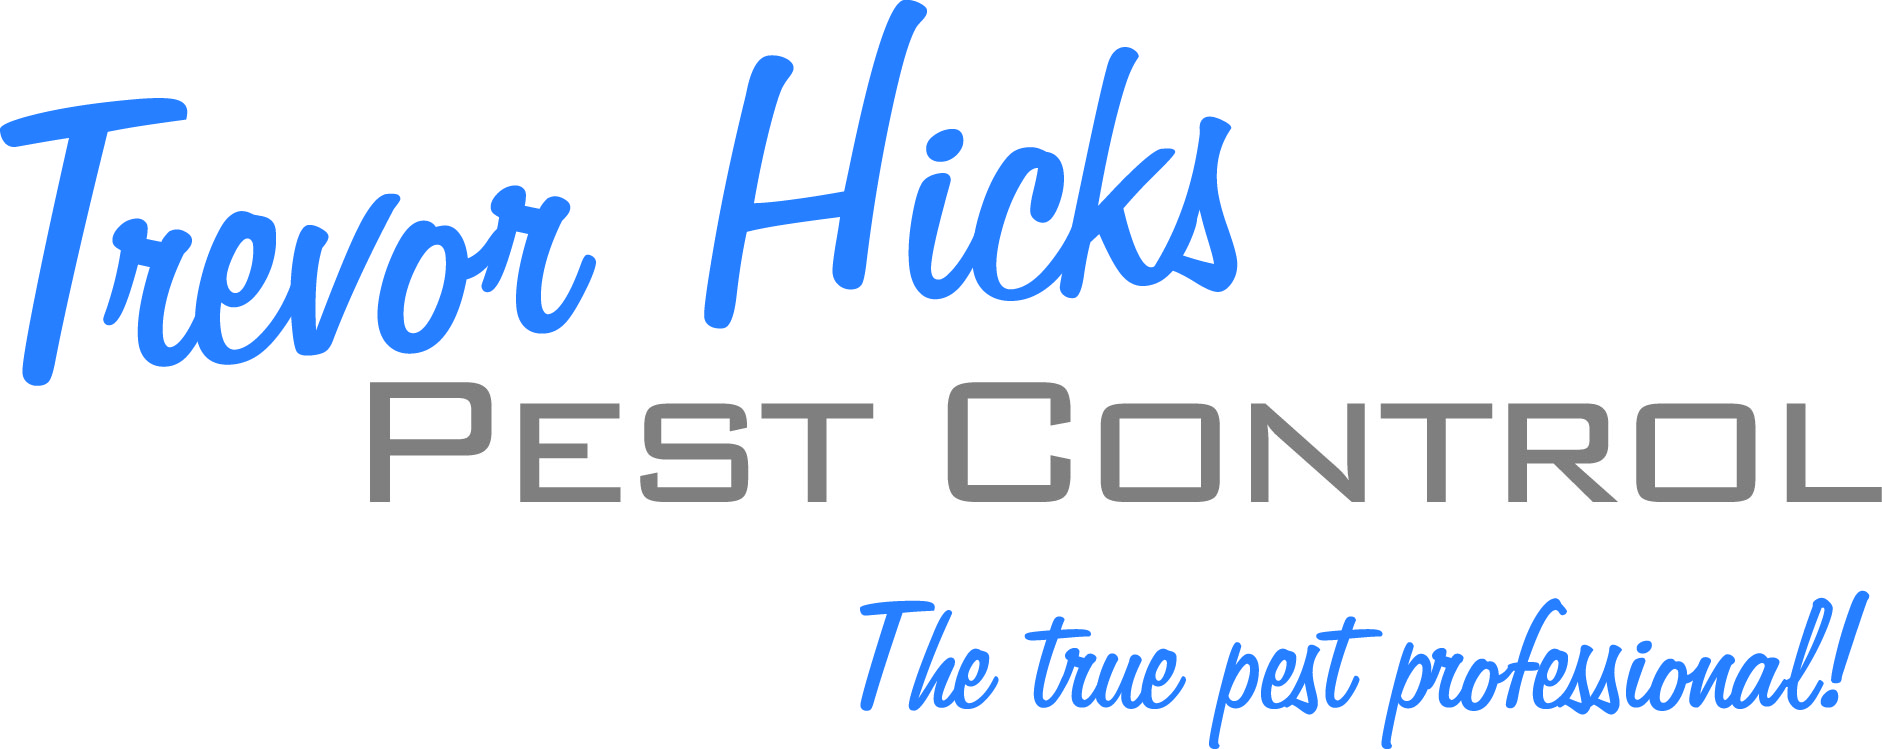 Trevor Hicks Pest Control